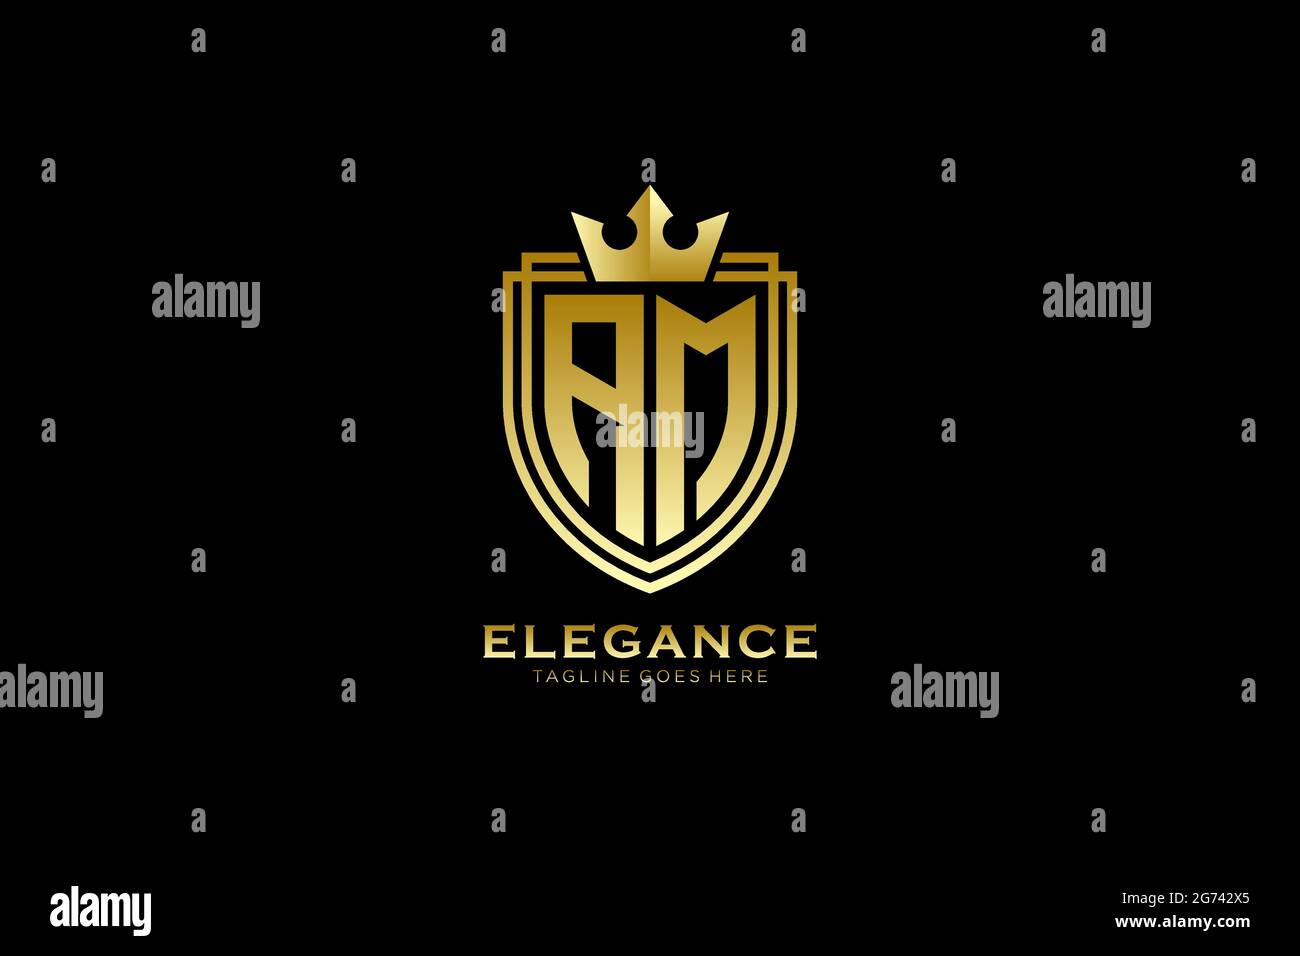 AM Elegantes Luxus-Monogramm-Logo oder Badge-Vorlage mit Rollen und königlicher Krone - perfekt für luxuriöse Branding-Projekte Stock Vektor